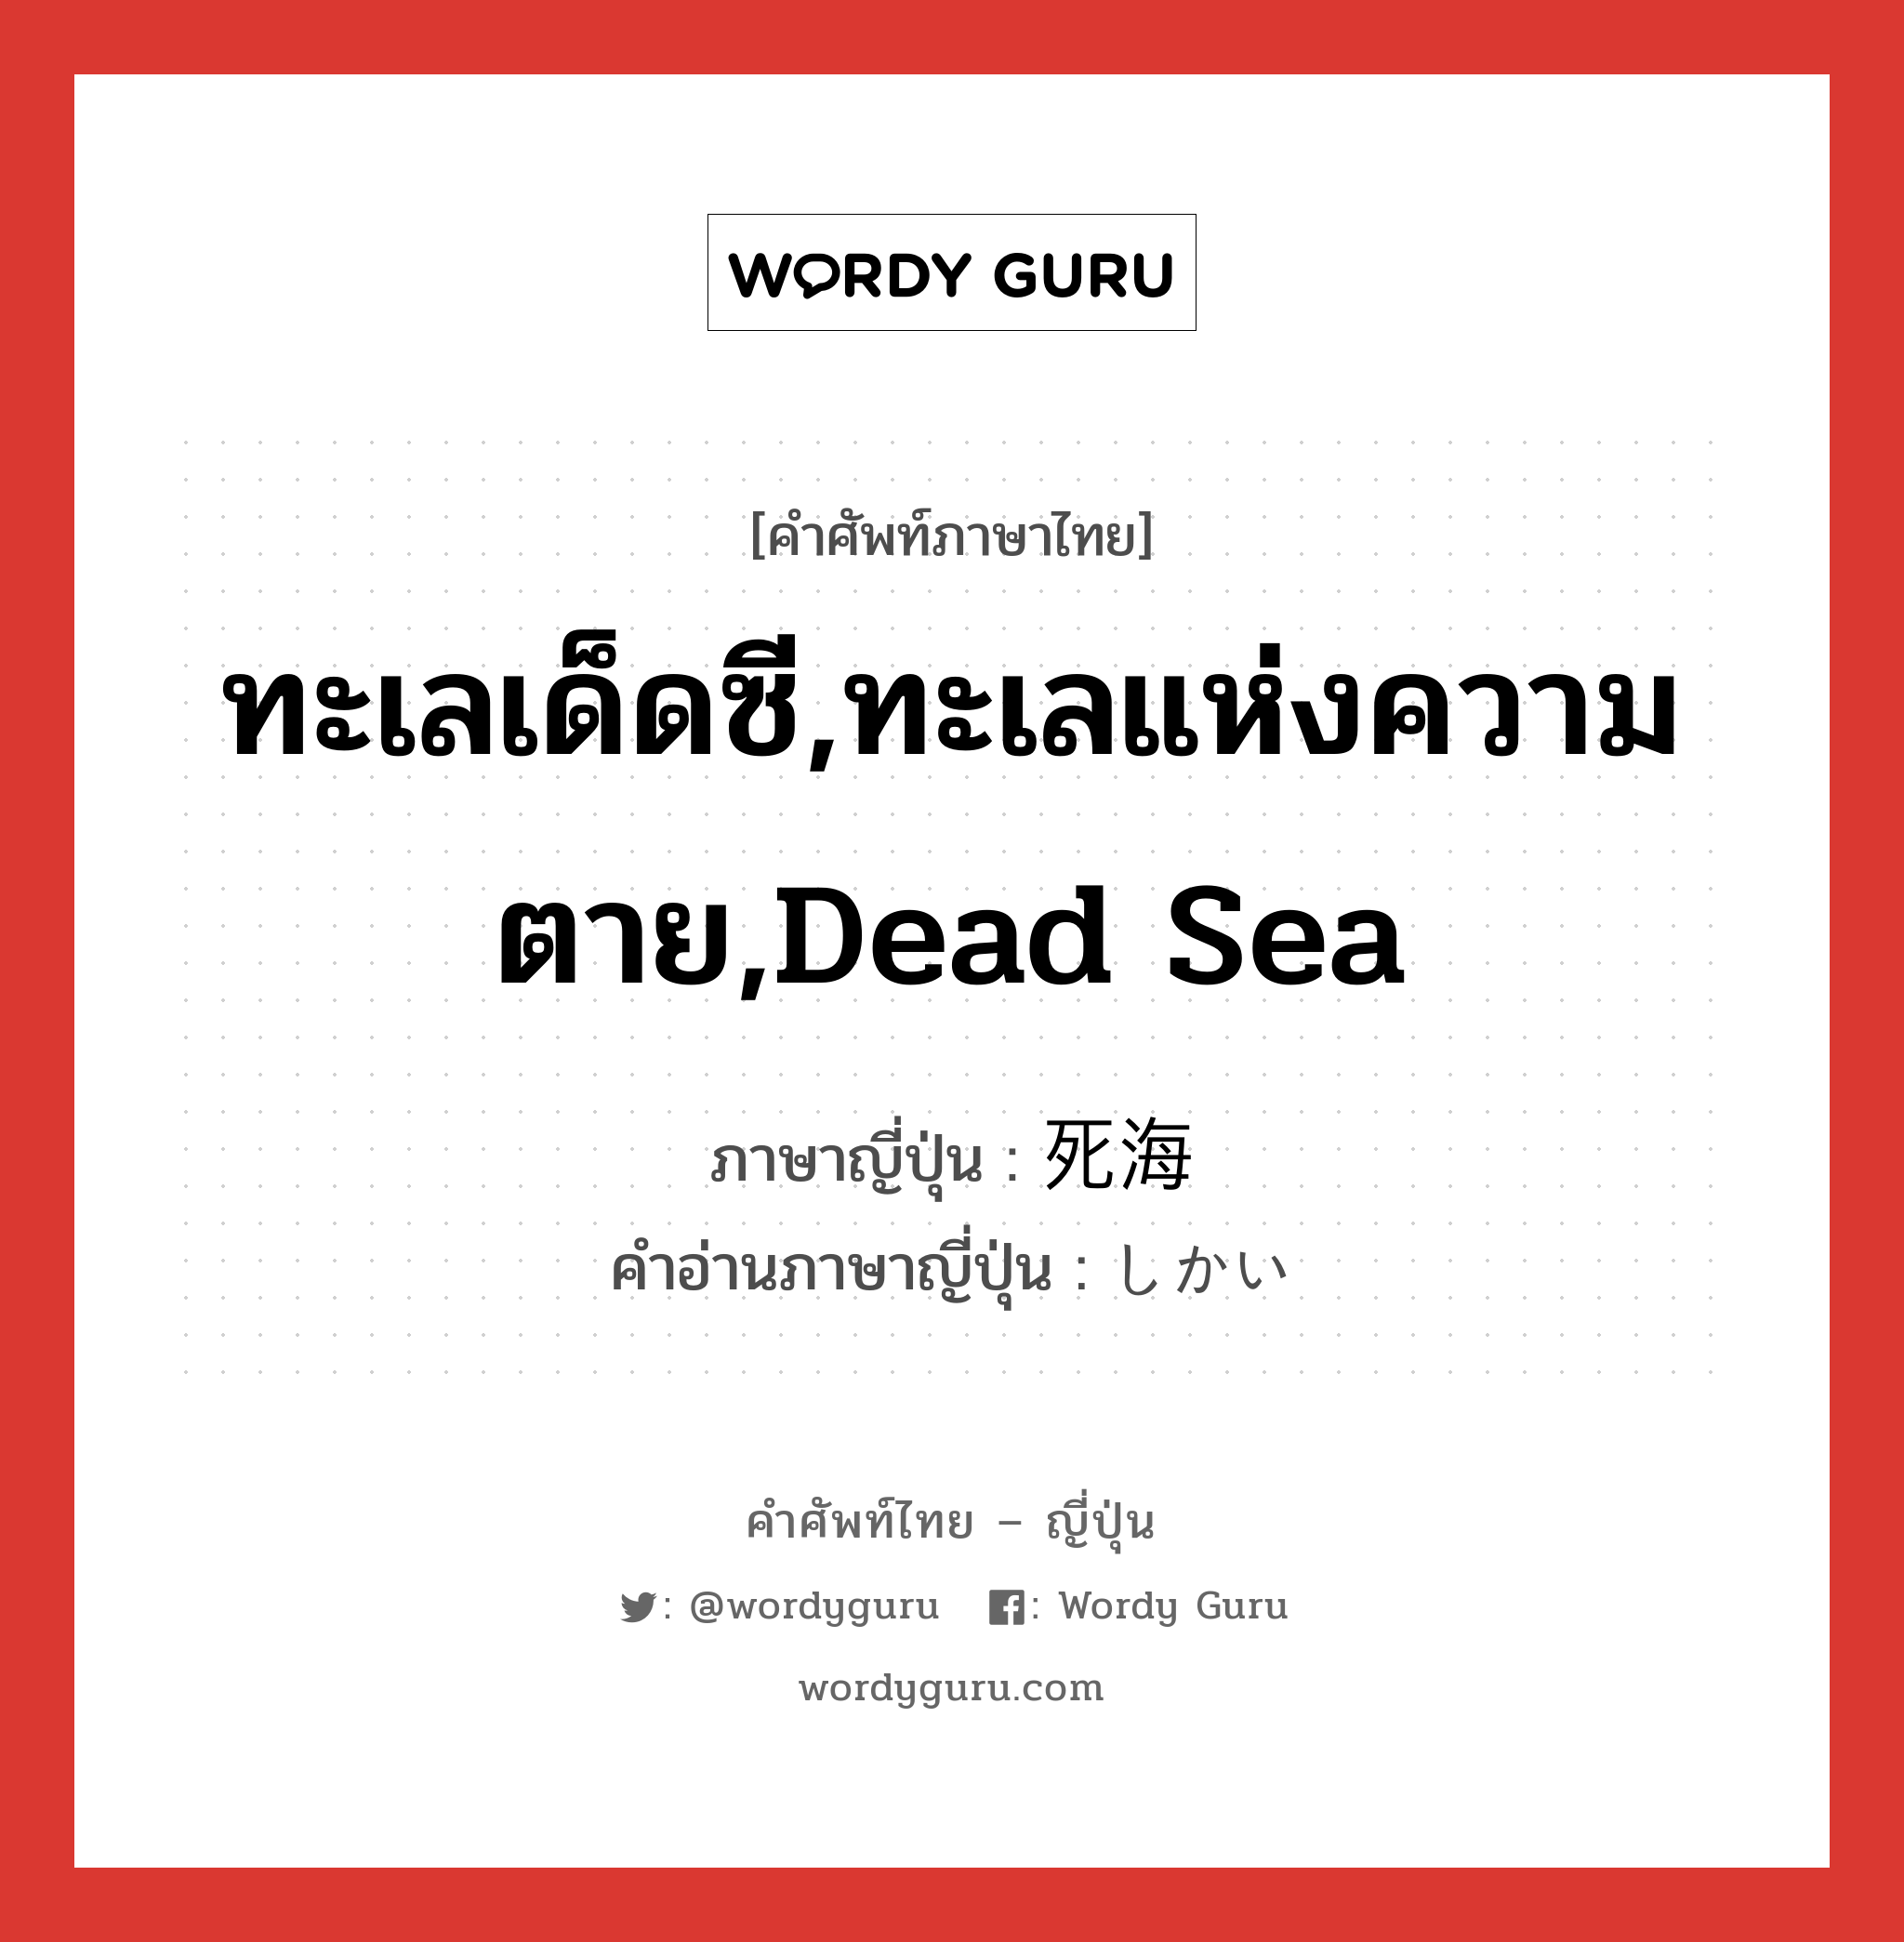 ทะเลเด็ดซี,ทะเลแห่งความตาย,Dead Sea ภาษาญี่ปุ่นคืออะไร, คำศัพท์ภาษาไทย - ญี่ปุ่น ทะเลเด็ดซี,ทะเลแห่งความตาย,Dead Sea ภาษาญี่ปุ่น 死海 คำอ่านภาษาญี่ปุ่น しかい หมวด n หมวด n